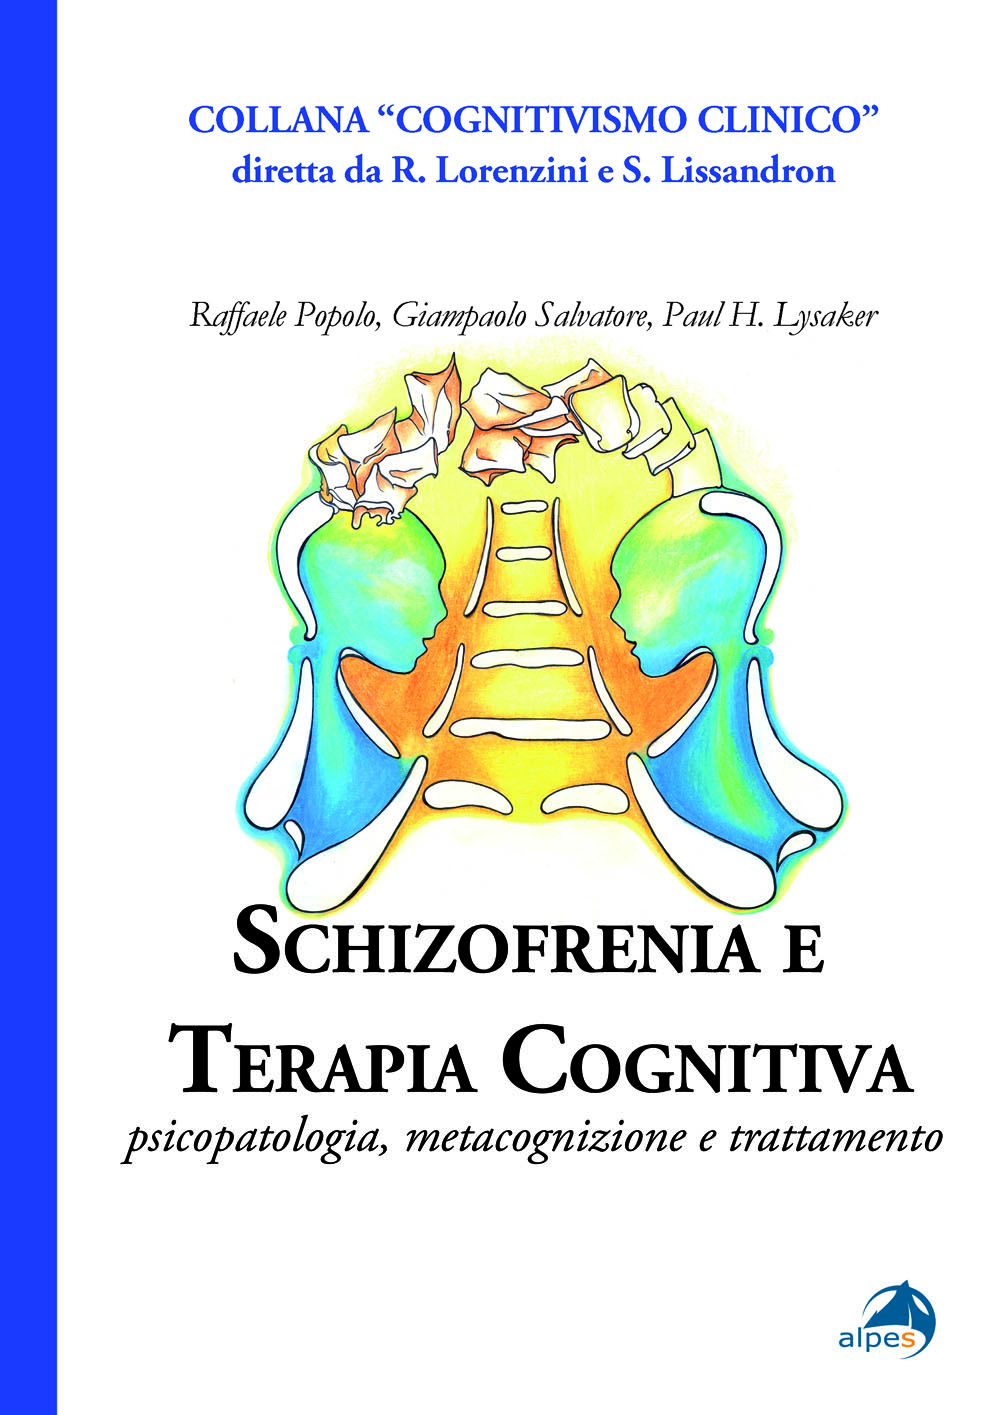 Recensione: Popolo, Salvatore & Lysaker - Schizofrenia e Terapia Cognitiva